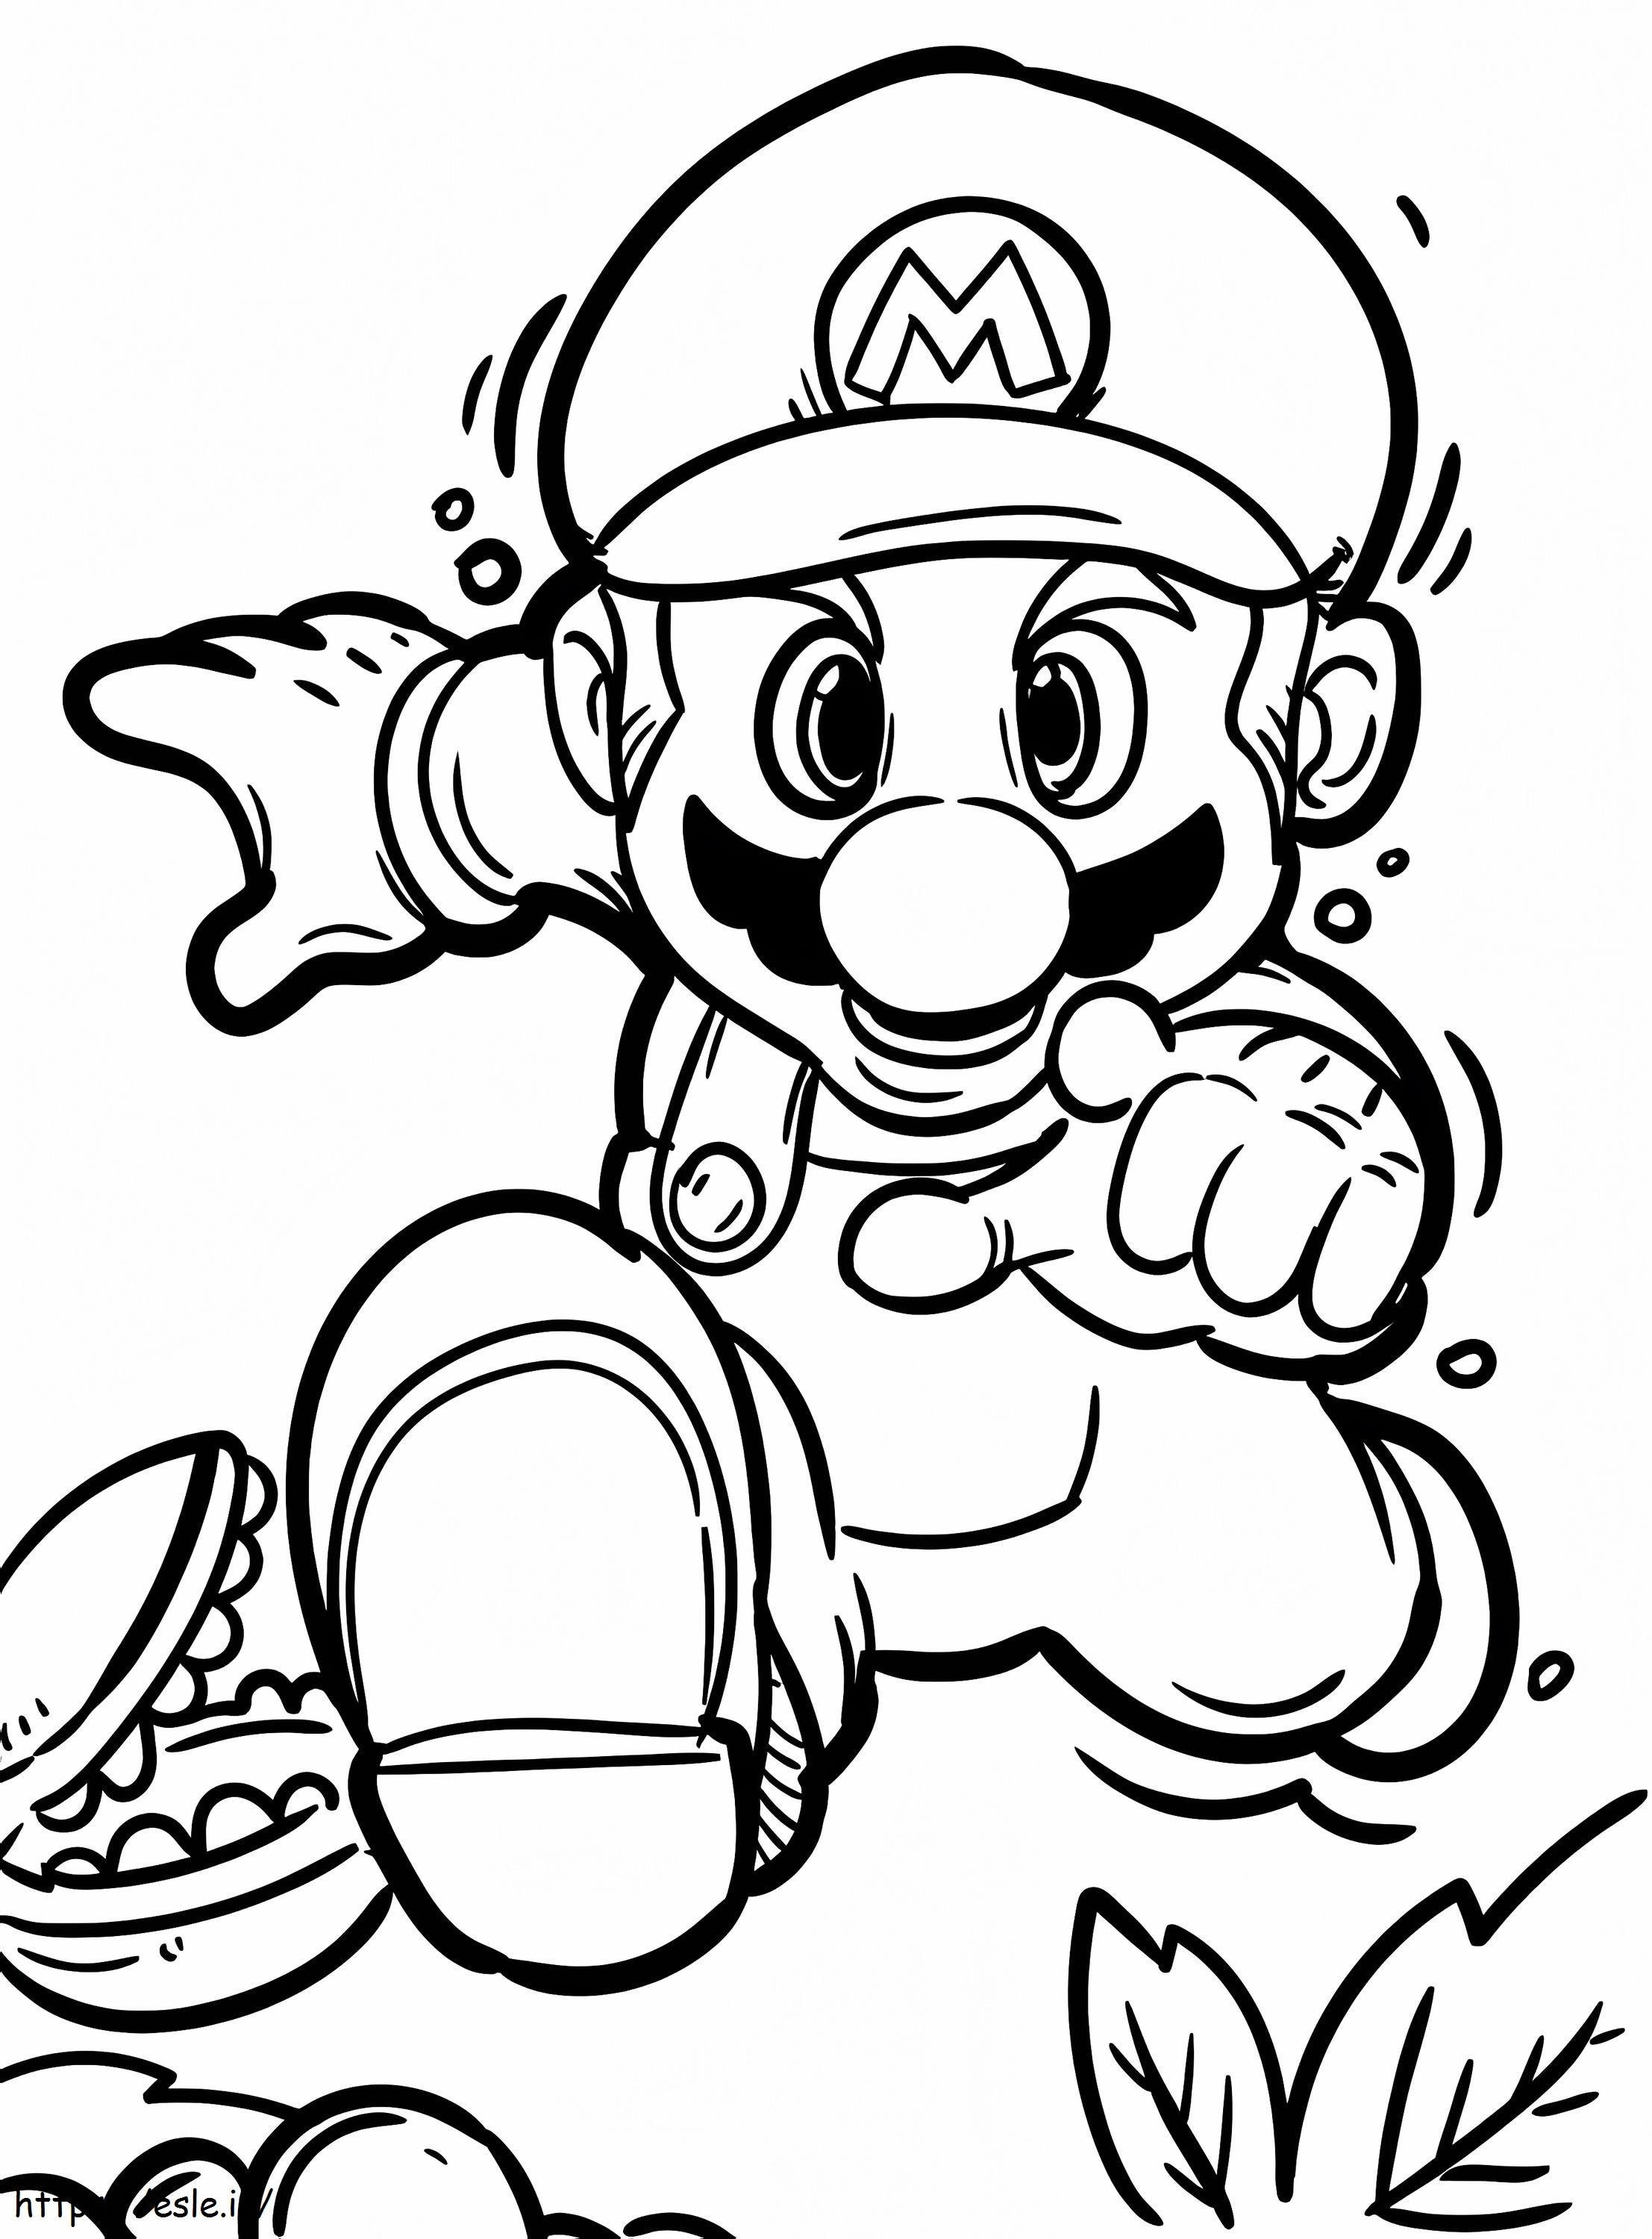 Super Mario genial para colorear